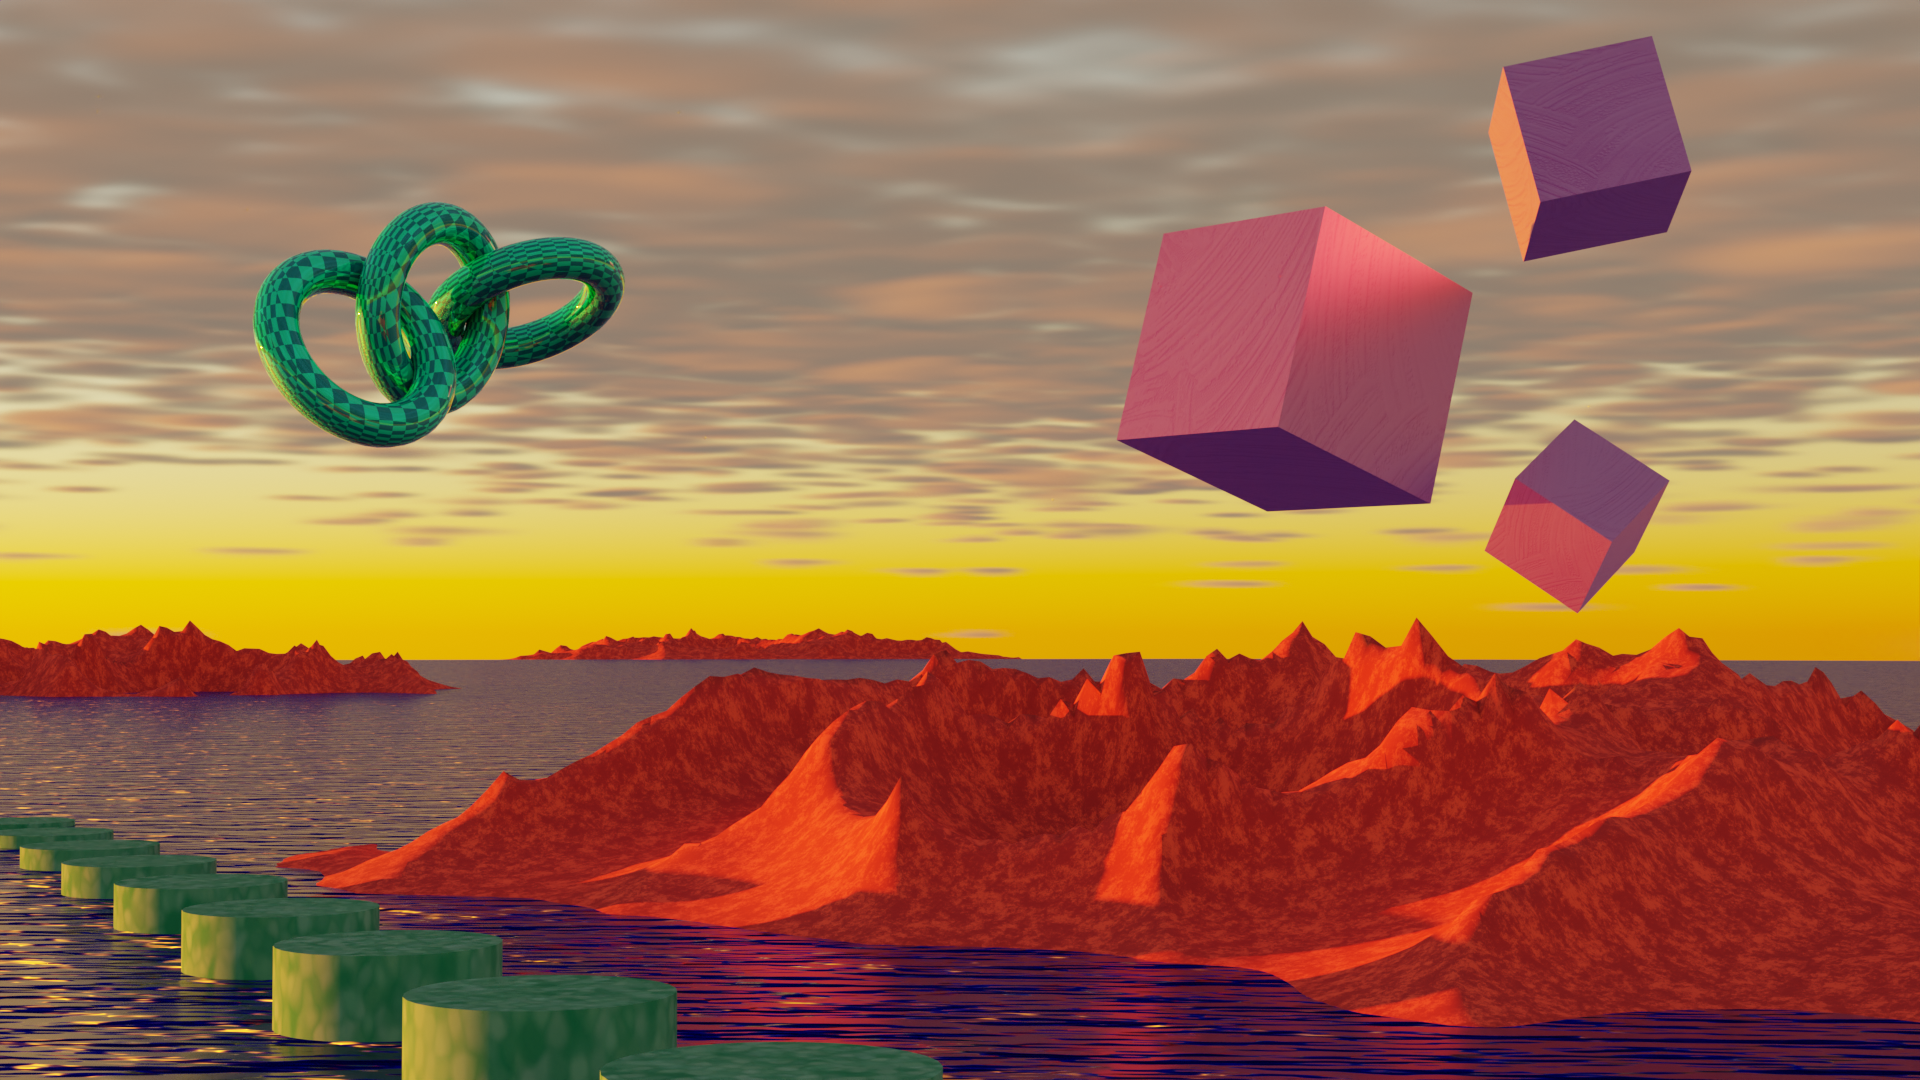 General 1920x1080 vaporwave landscape Blender CGI cube water digital art